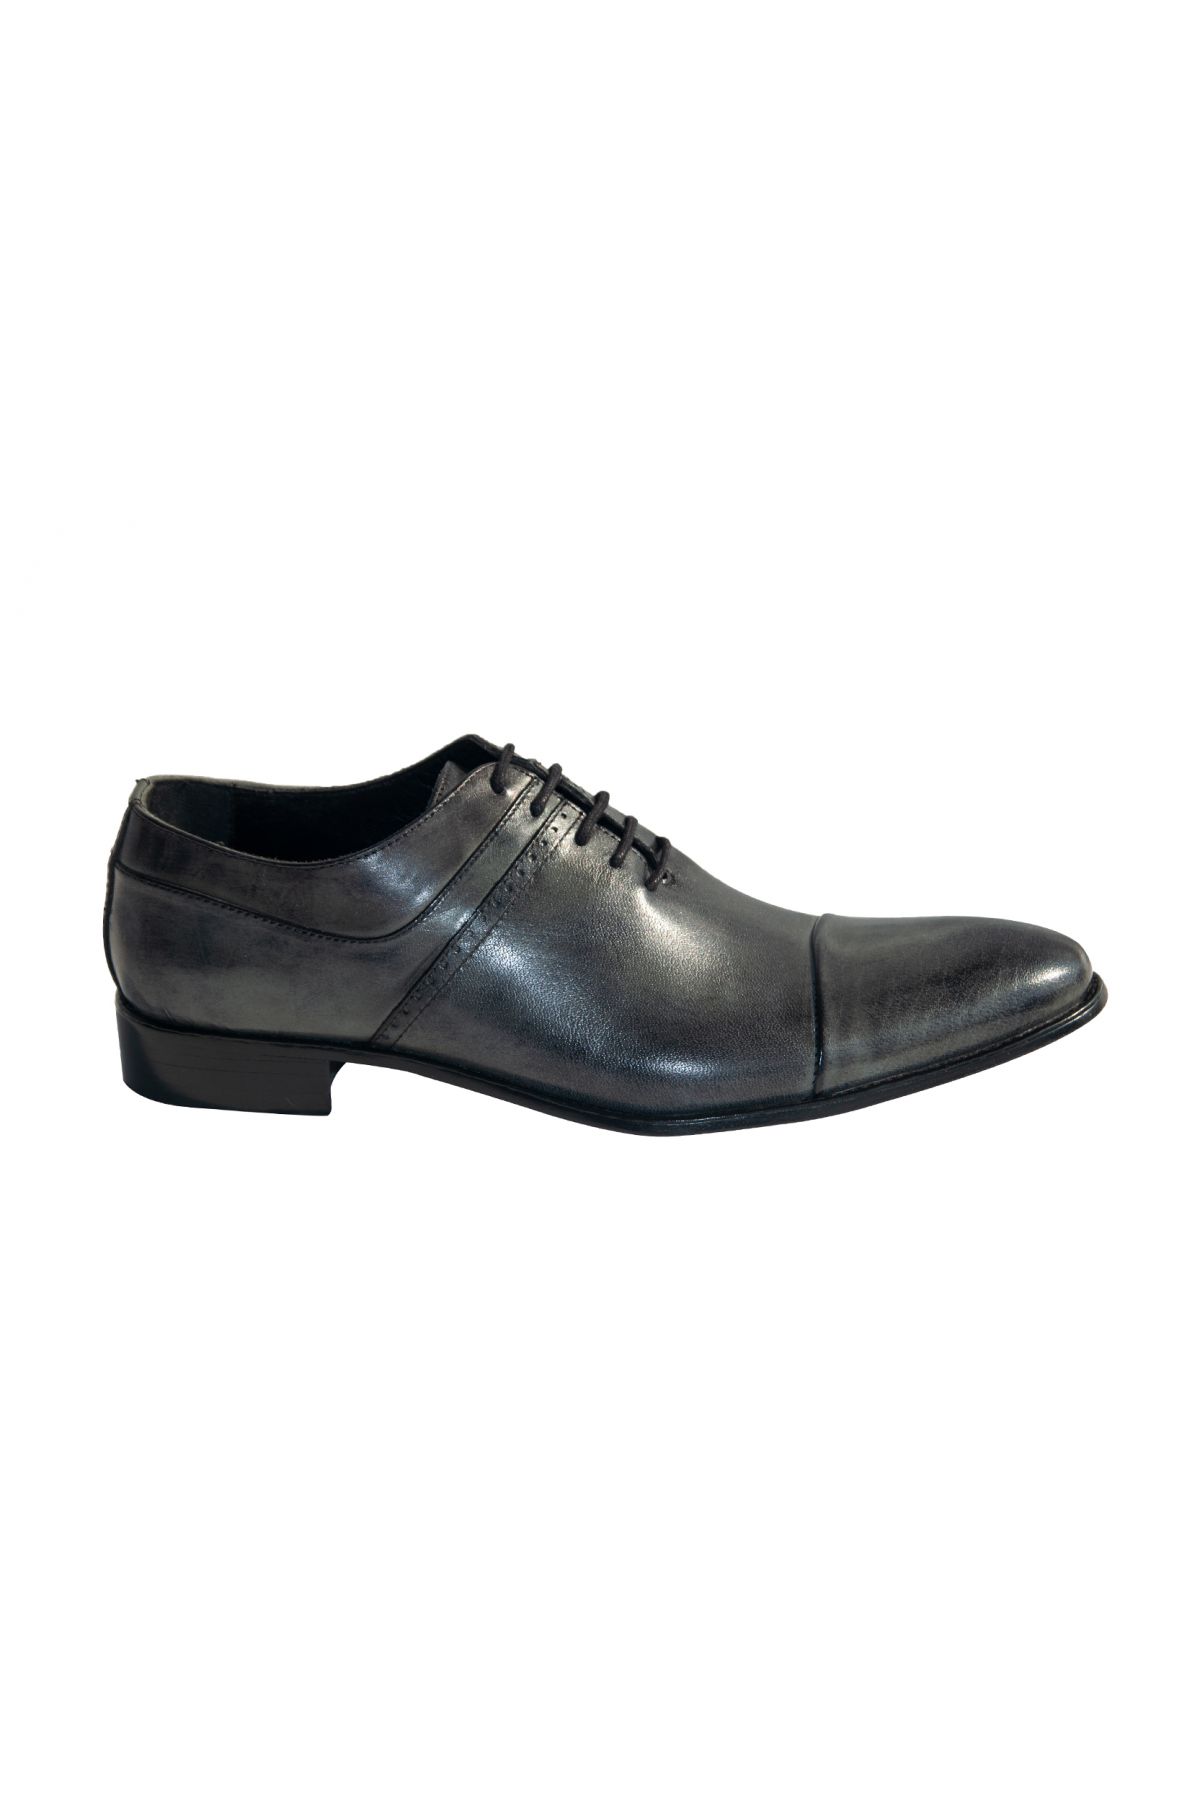 Pierre Cardin Gents Shoes Fm-1317 Char-Grey Men Shoes